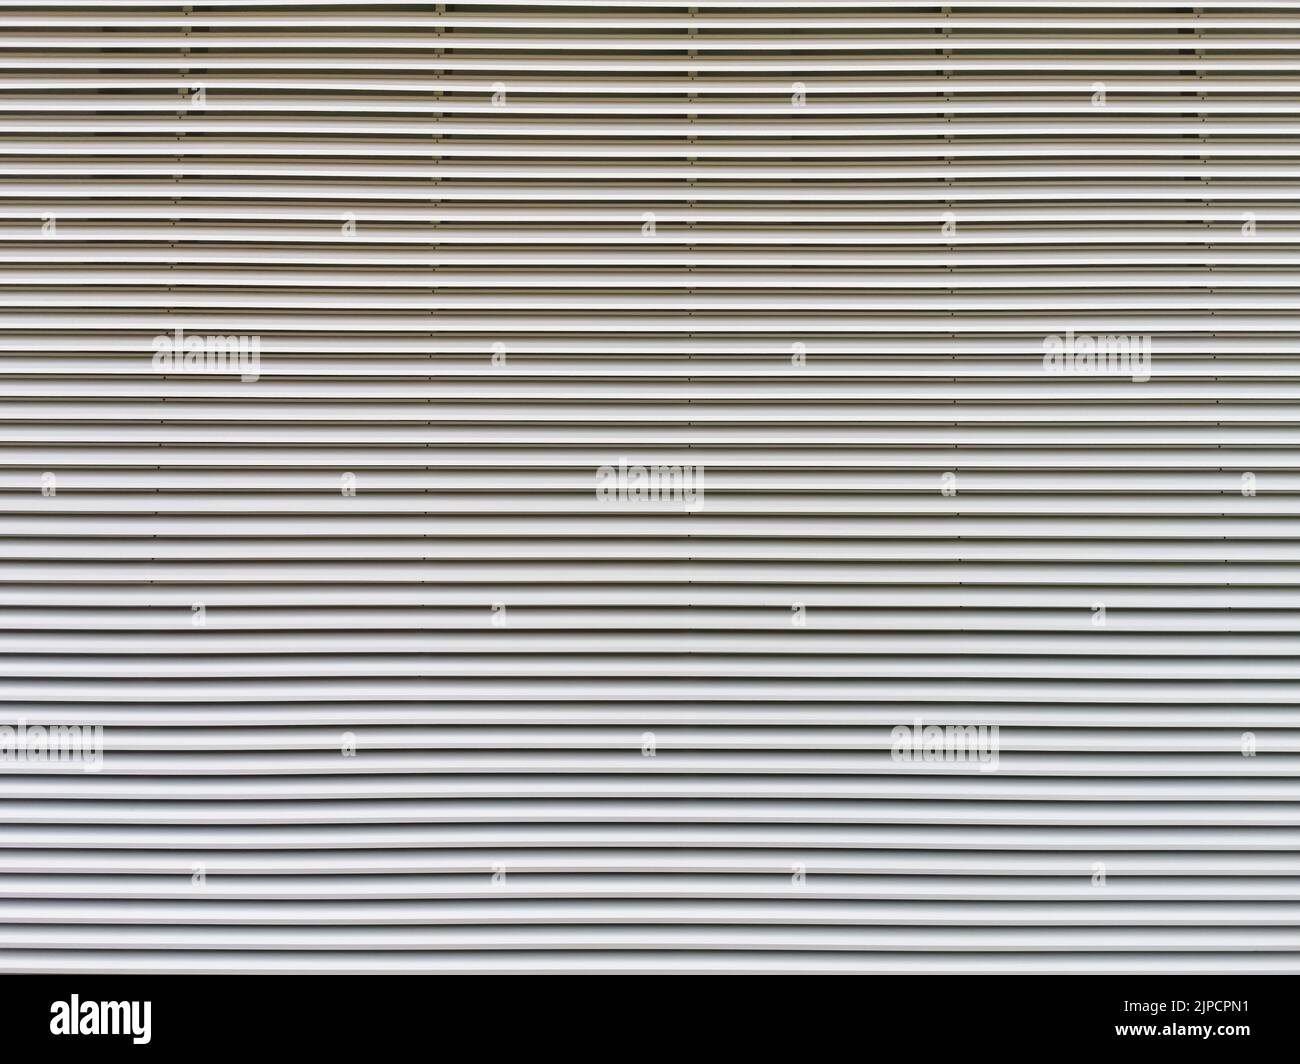 Struttura del pannello a parete in forma di griglia metallica, utilizzata per coprire ambienti che necessitano di ventilazione dell'aria, HVAC e locali tecnici negli edifici... Foto Stock